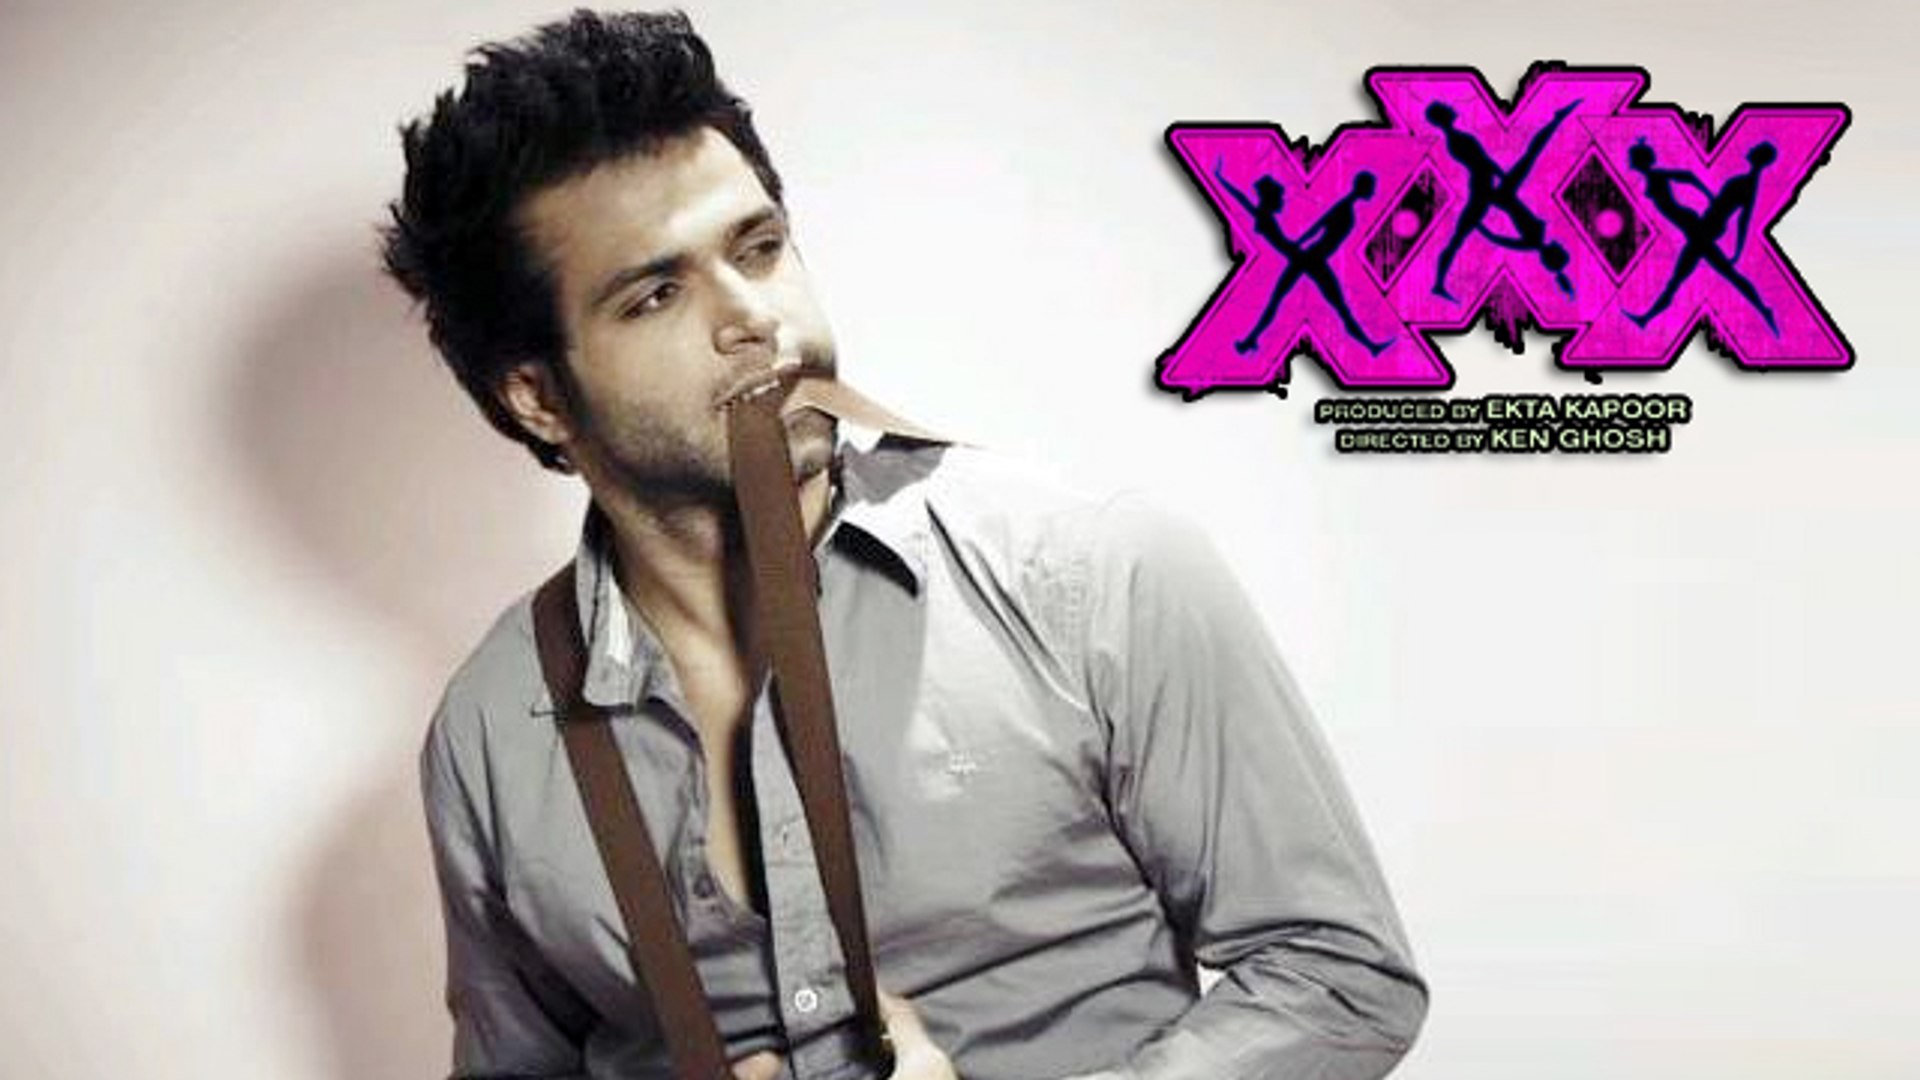 Xxx Photo Of Karishma Kapoor - Rithvik Dhanjani To Make His Bollywood Debut With Ekta Kapoor's XXX? -  video Dailymotion